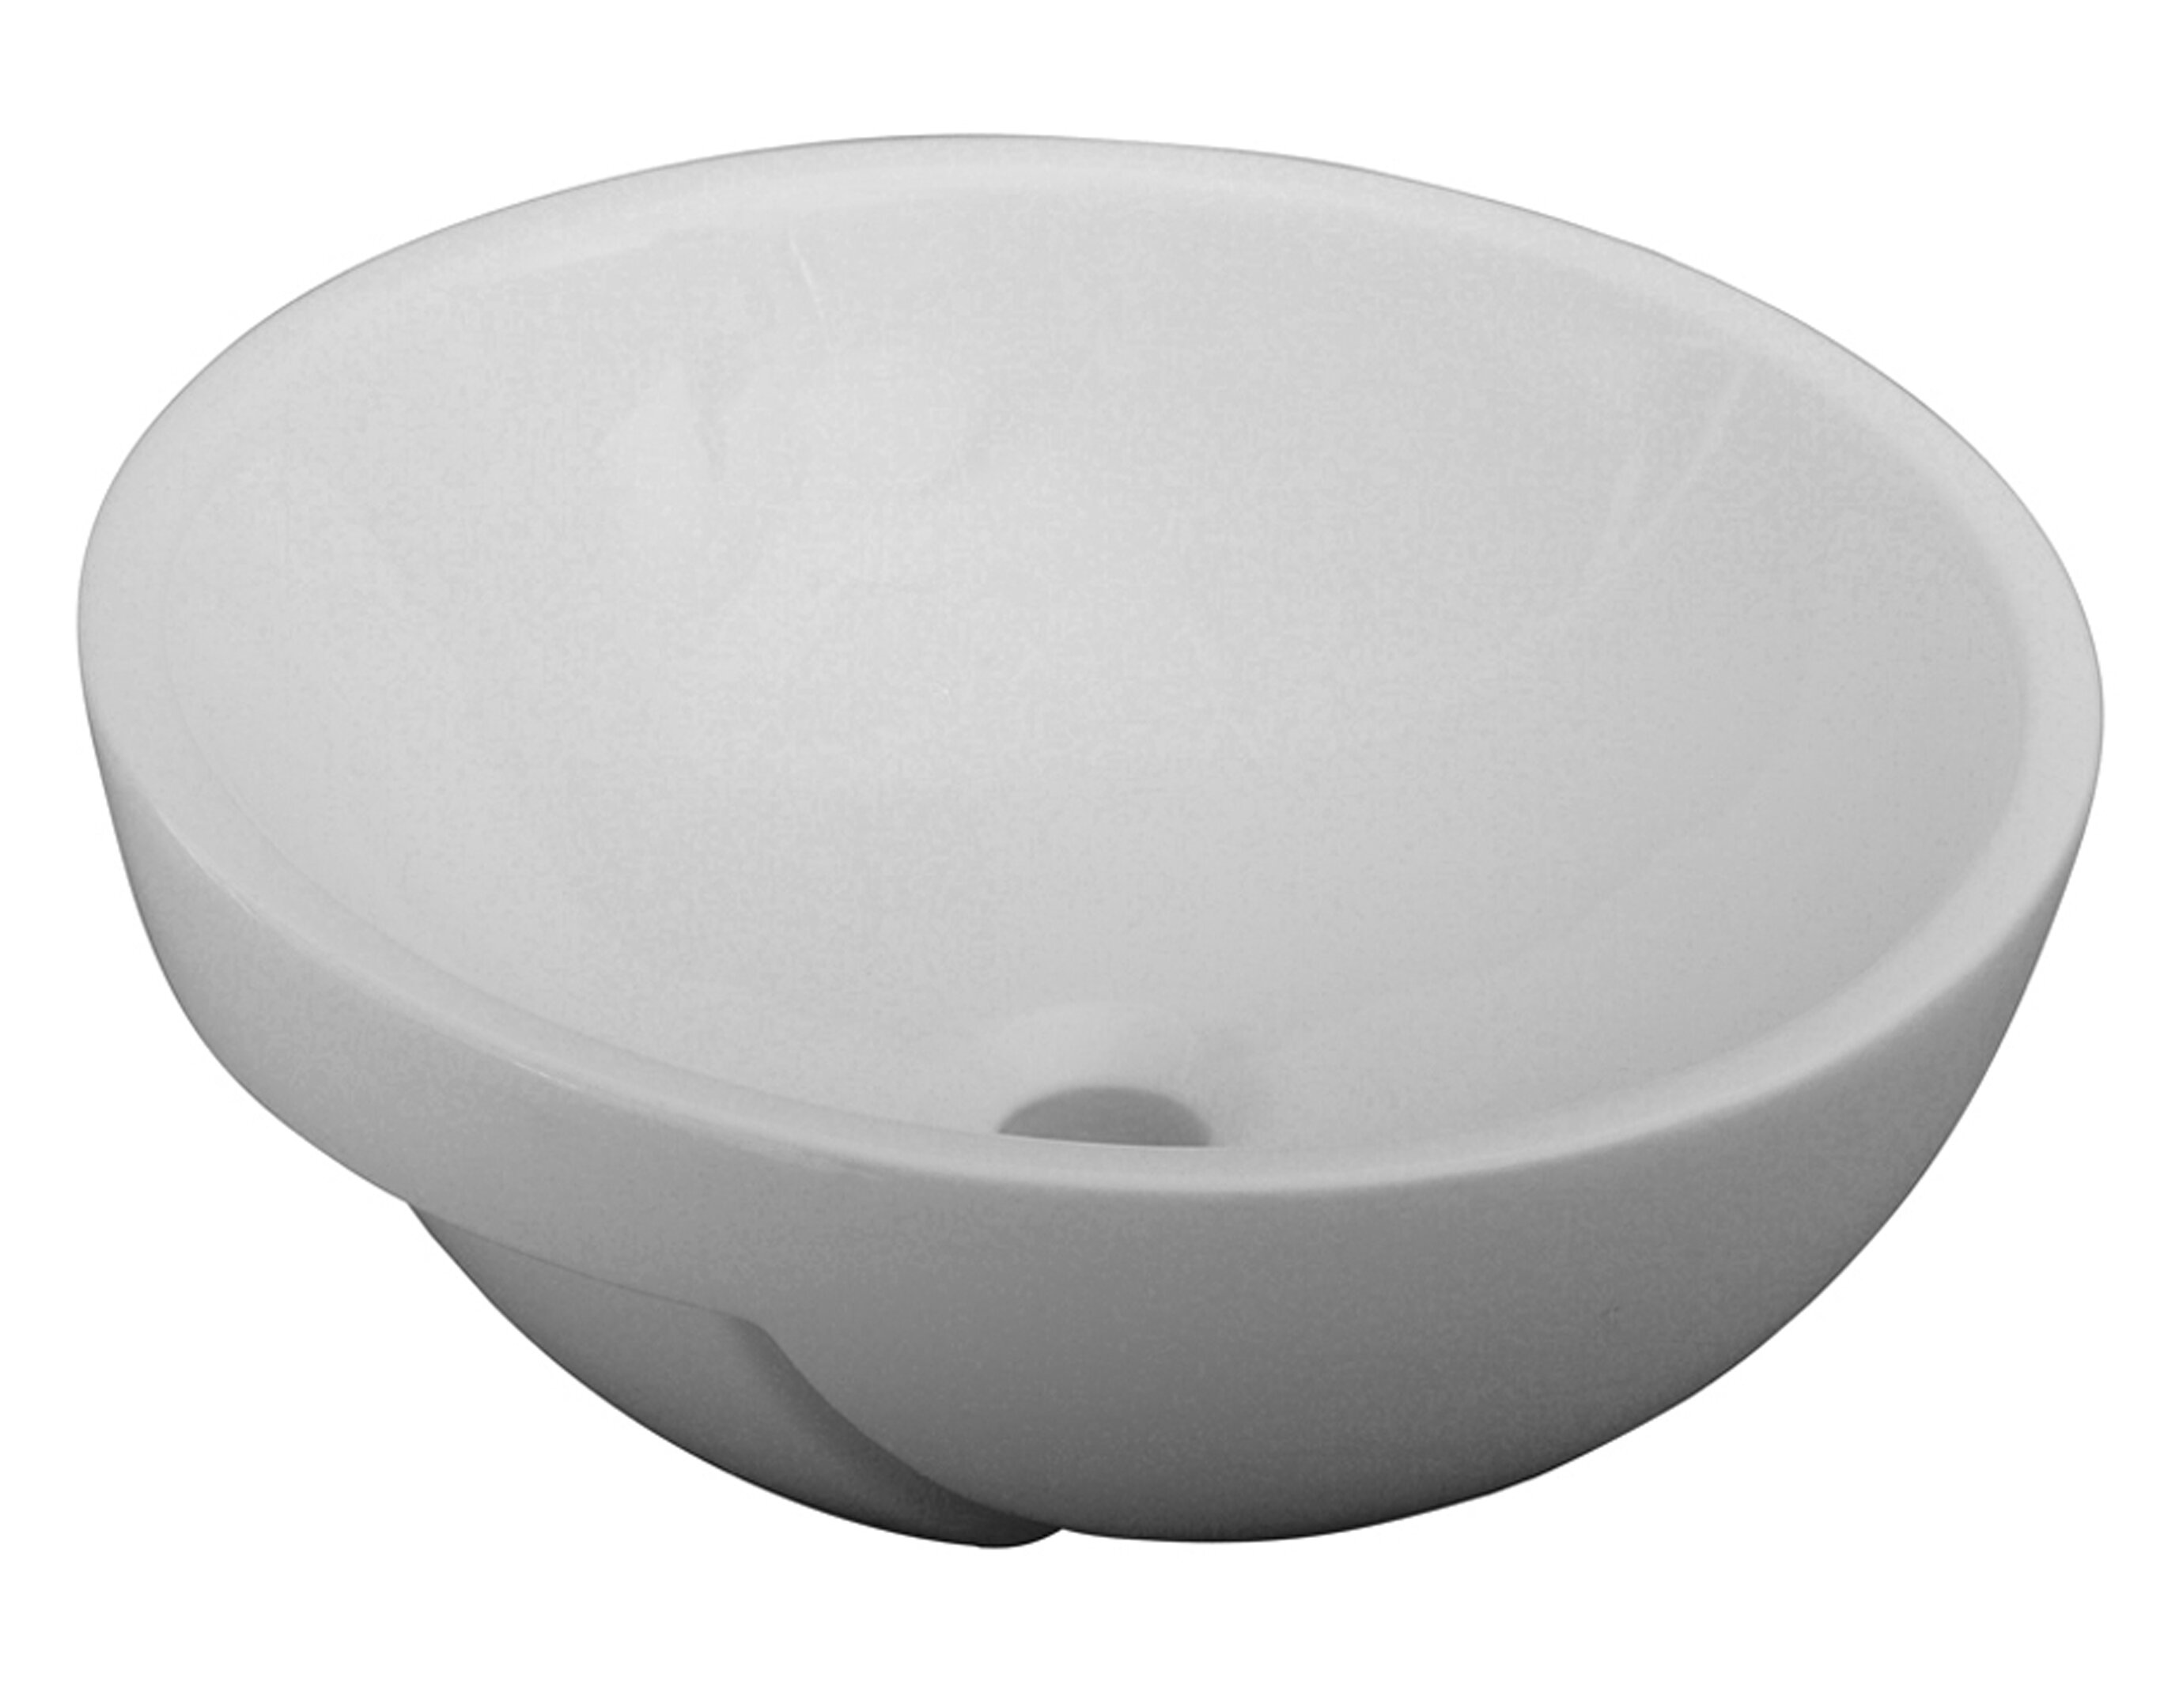 square ceramic vessel bathroom sink in white